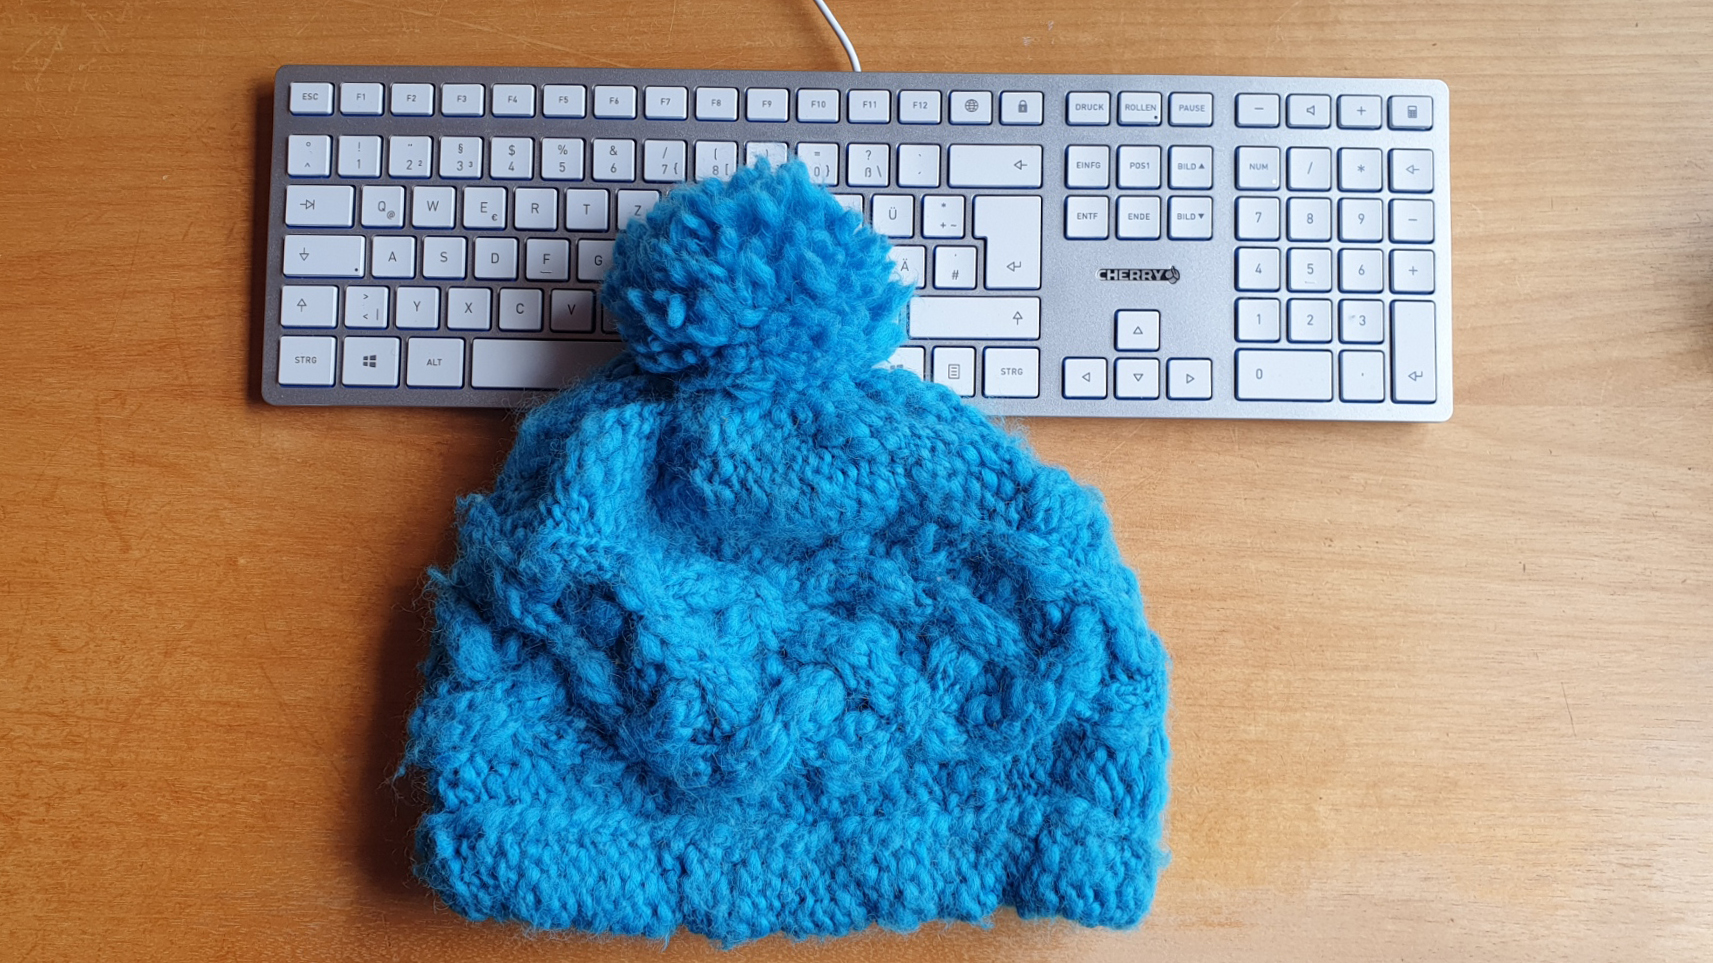 Zu sehen ist eine blaue Wollmütze. Sie liegt auf einer silber-weißen Tastatur auf einem Holztisch. 